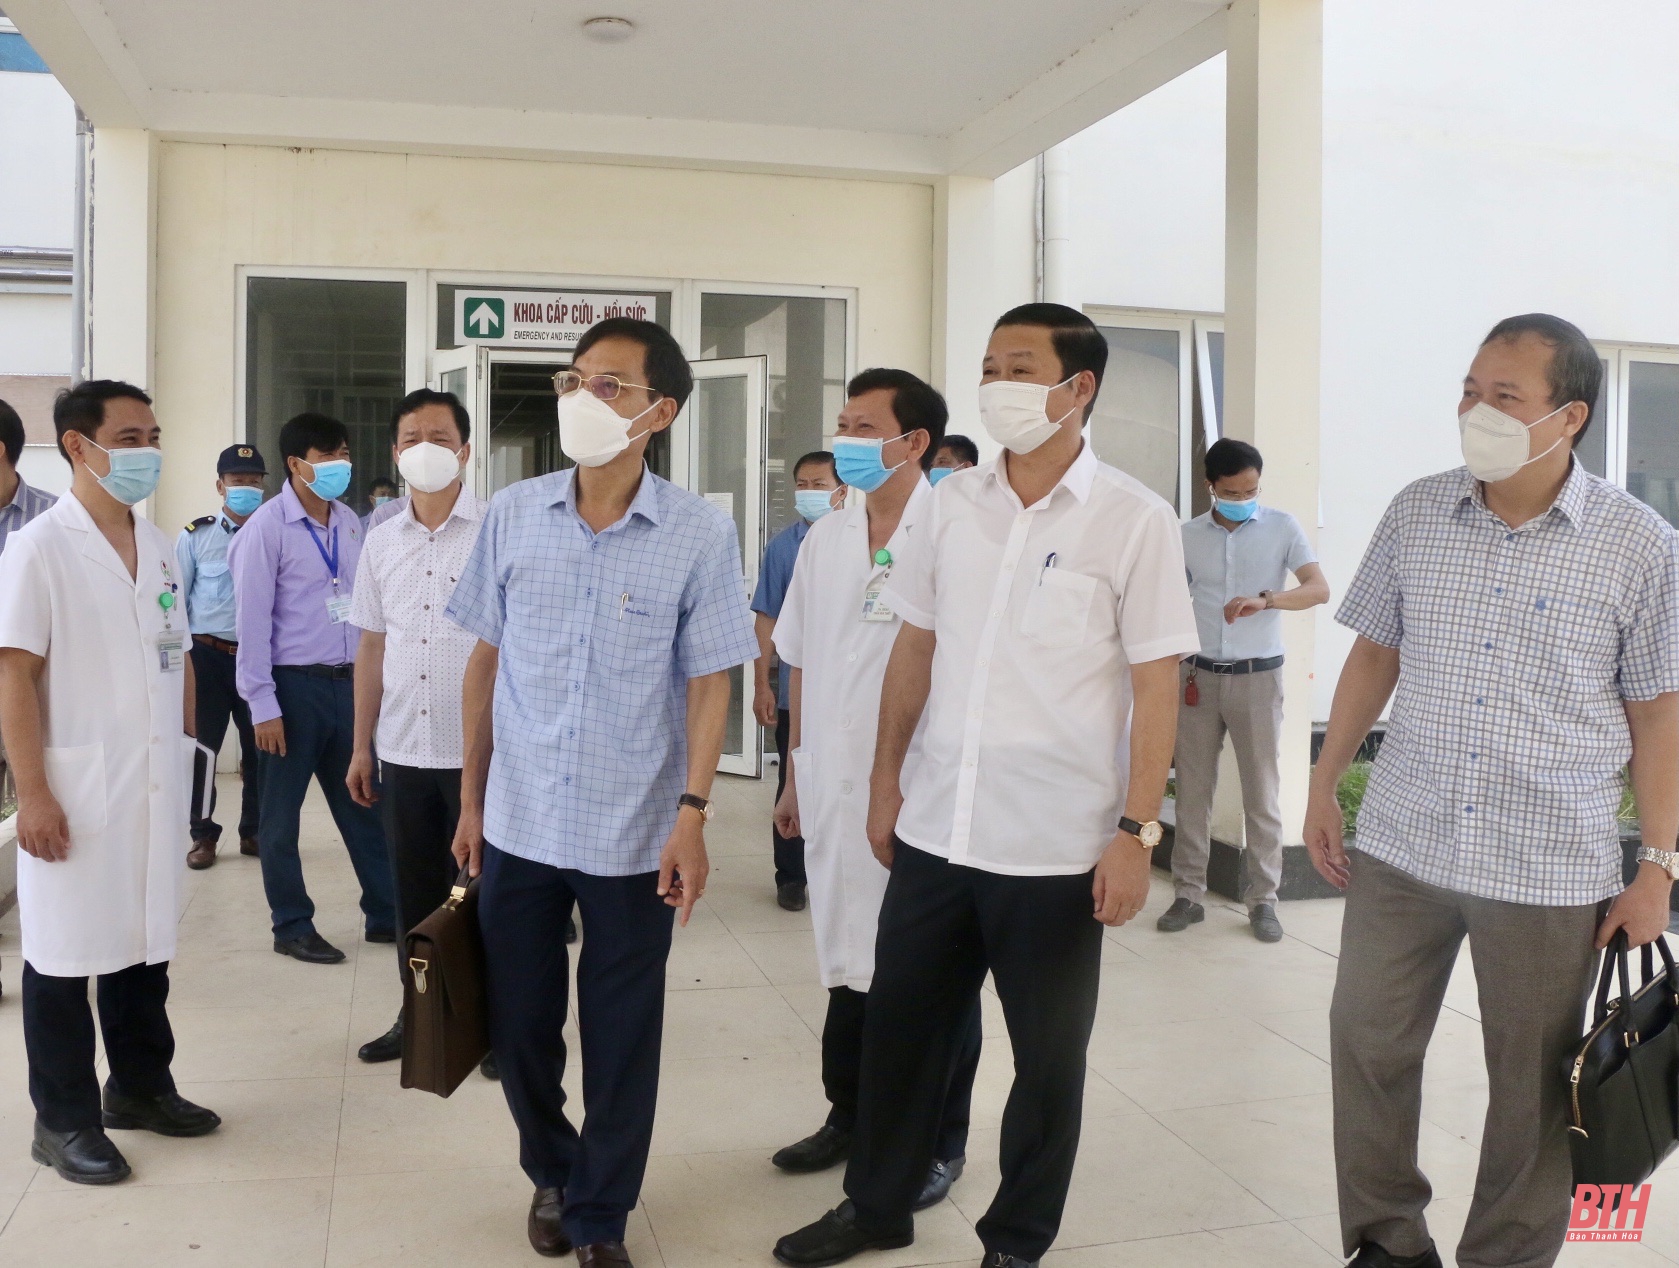 Khảo sát cơ sở điều trị bệnh nhân COVID-19 tại Bệnh viện Ung bướu Thanh Hoá và Bệnh viện 71 Trung ương